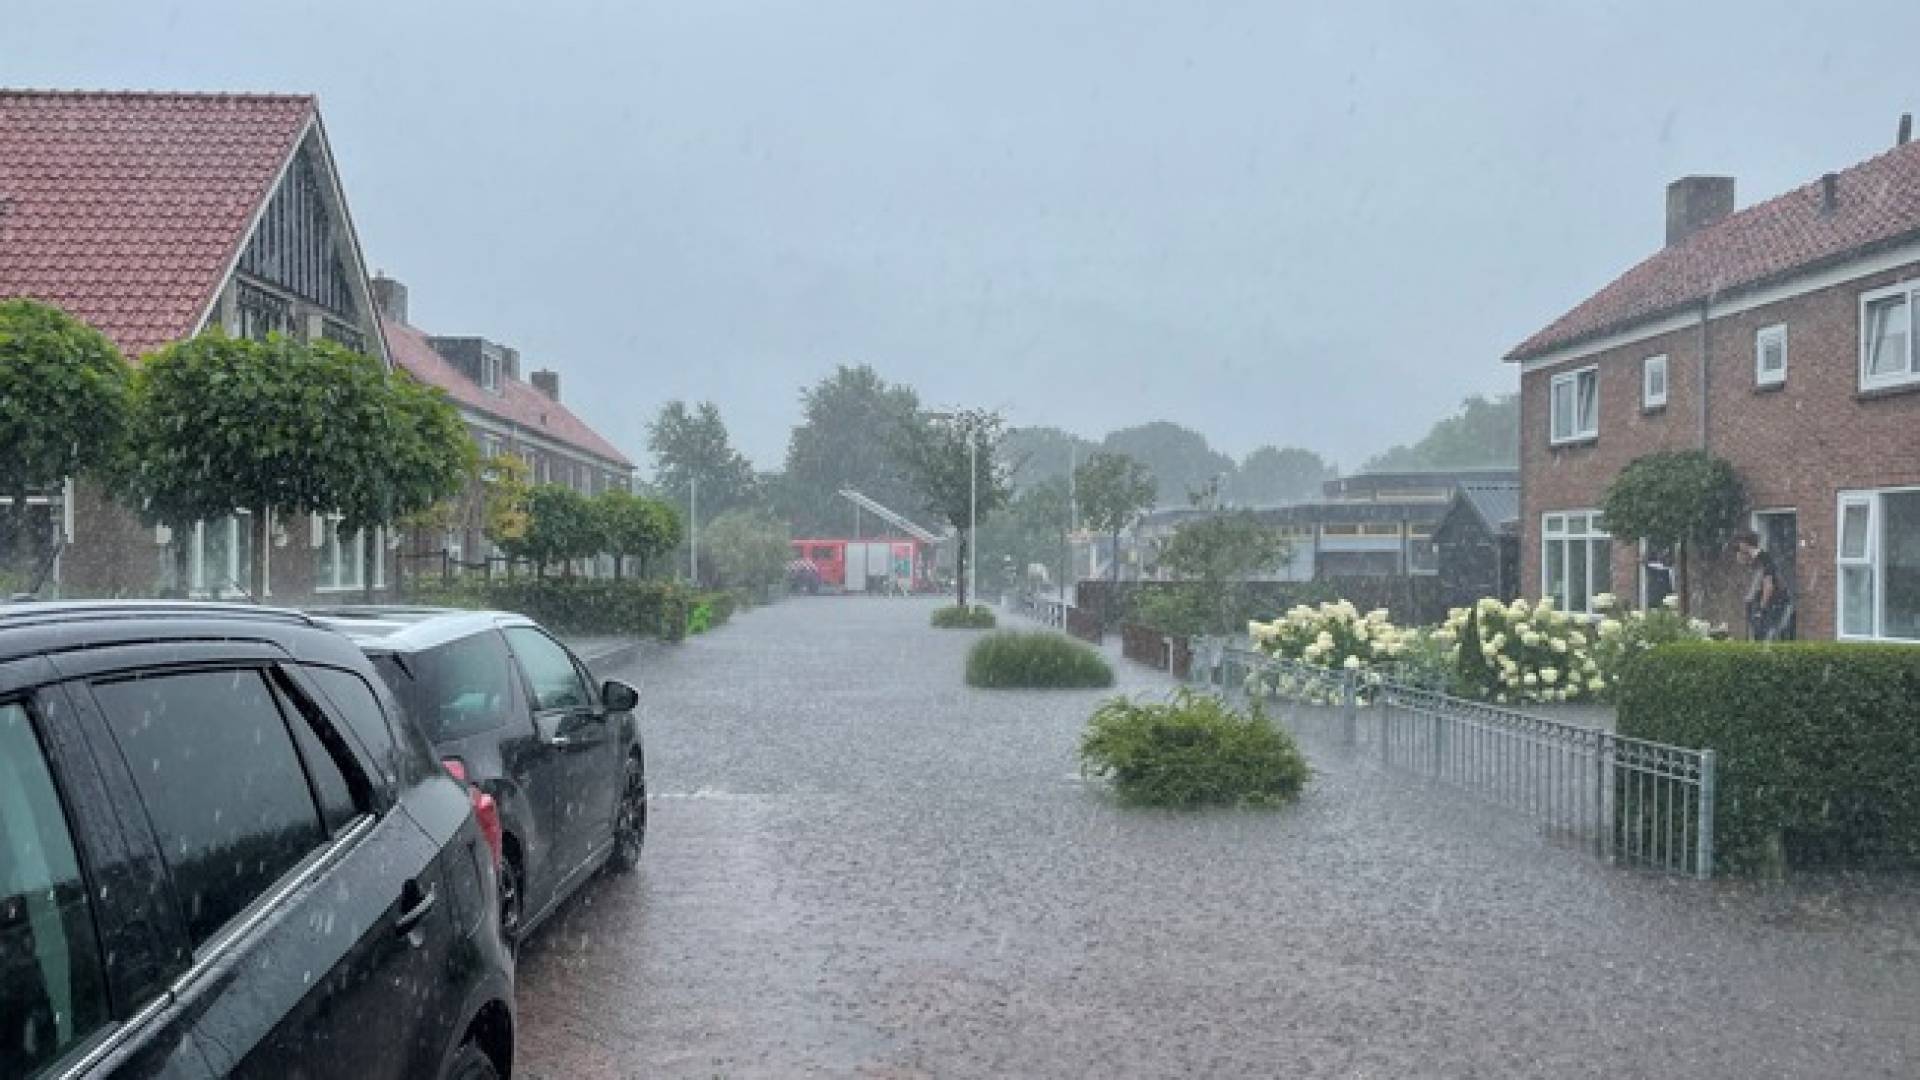 أمطار غزيرة في المقاطعات الشمالية وفيضانات في فريزلاند، رمزاً أصفرلأربع مقاطعات